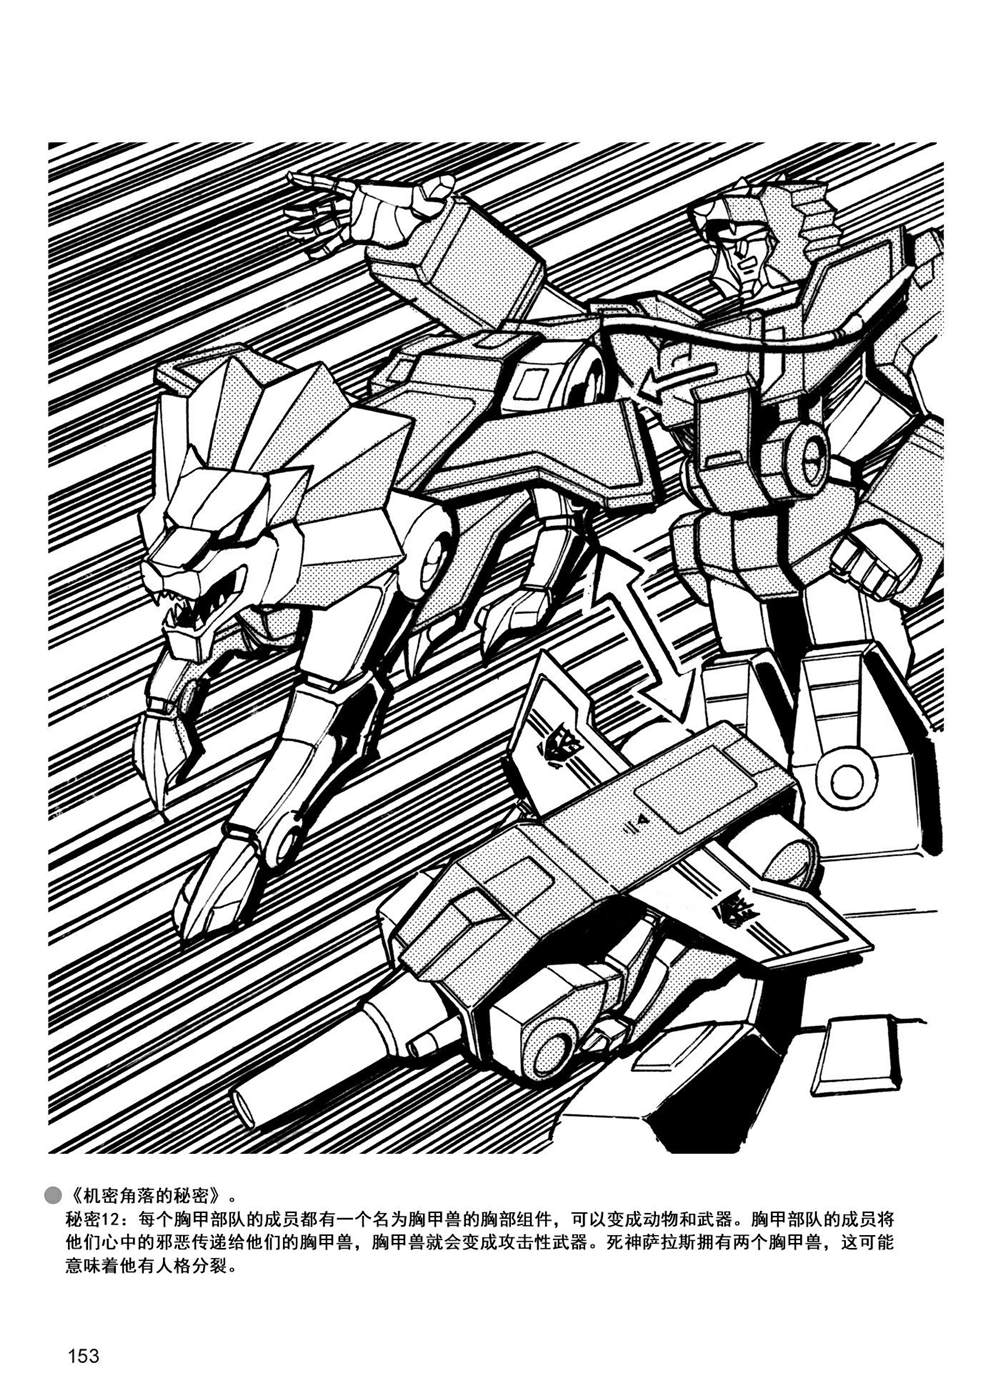 变形金刚日版G1杂志插画 - 战斗吧！超机械生命体变形金刚：胜利之斗争 - 3